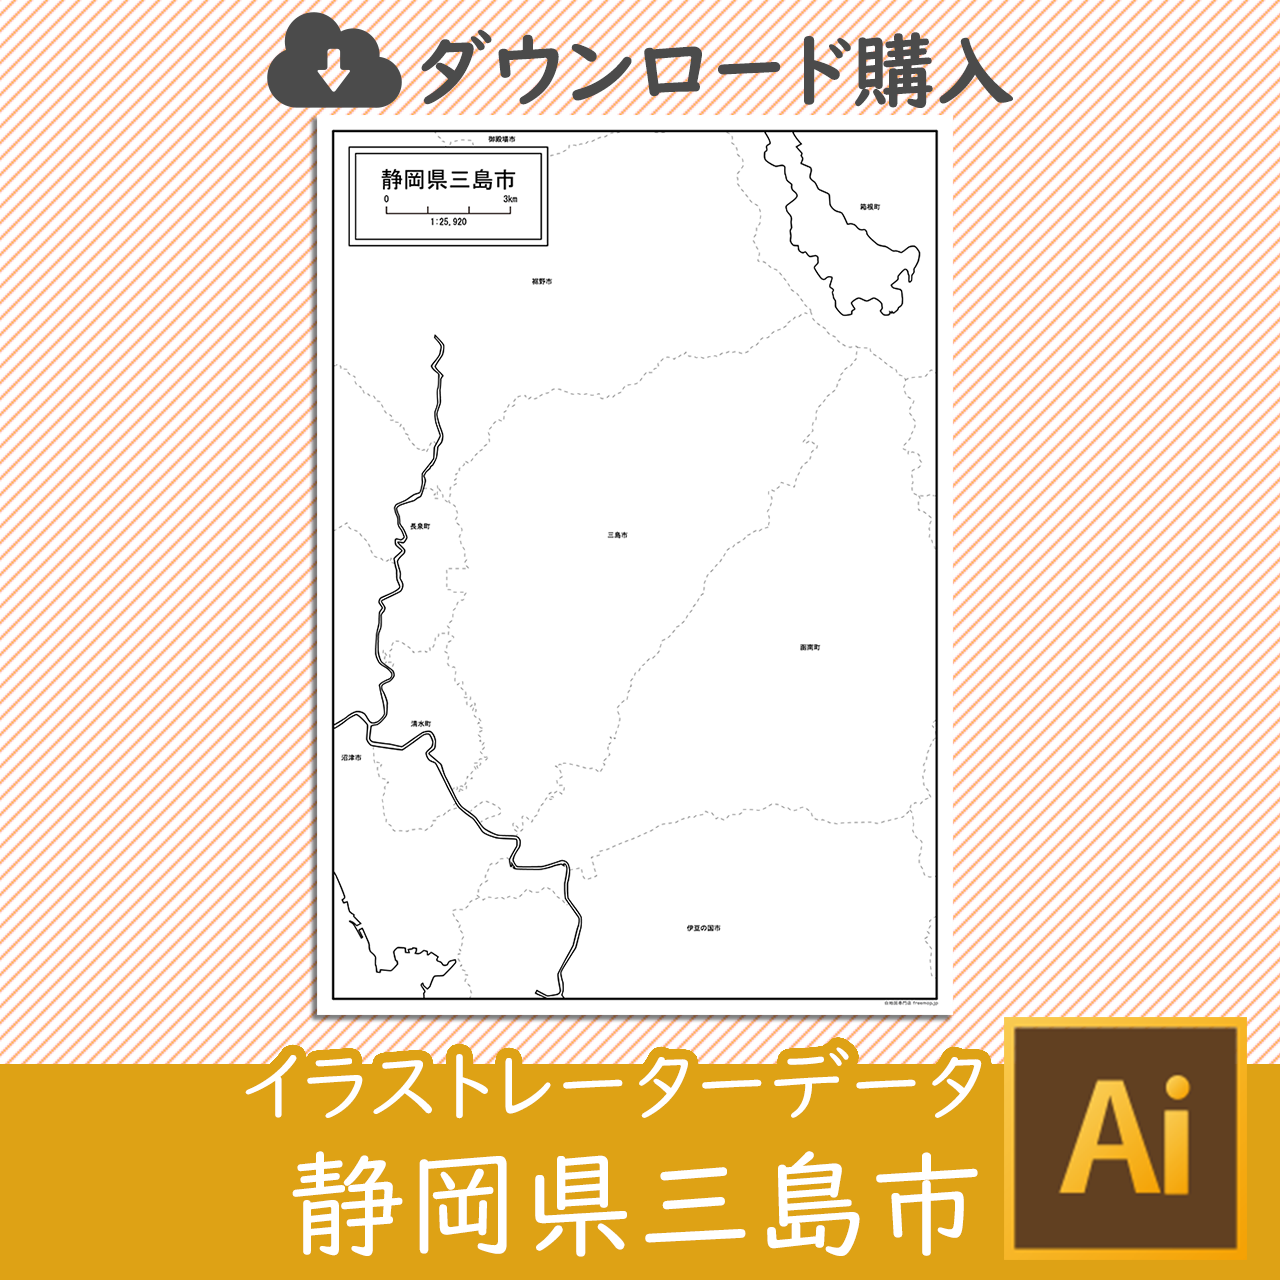 三島市のaiデータのサムネイル画像